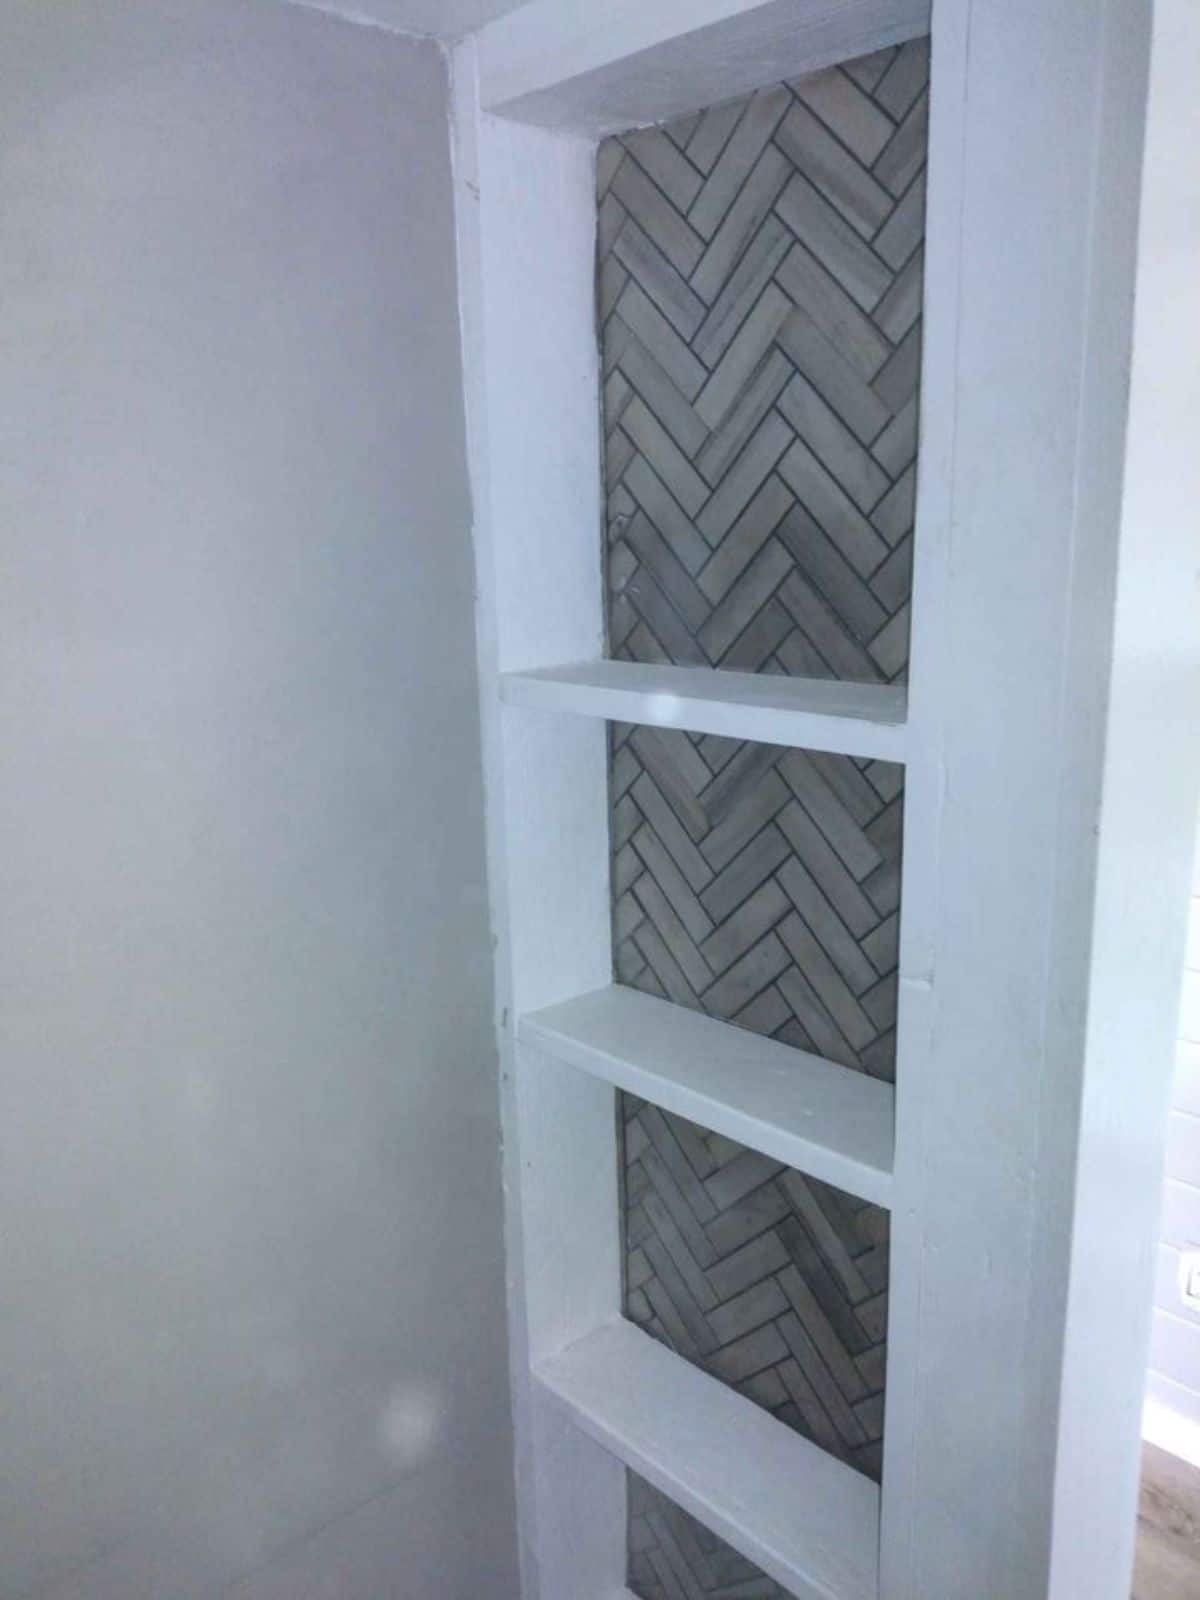 shelves with tile backsplash inside kitchen